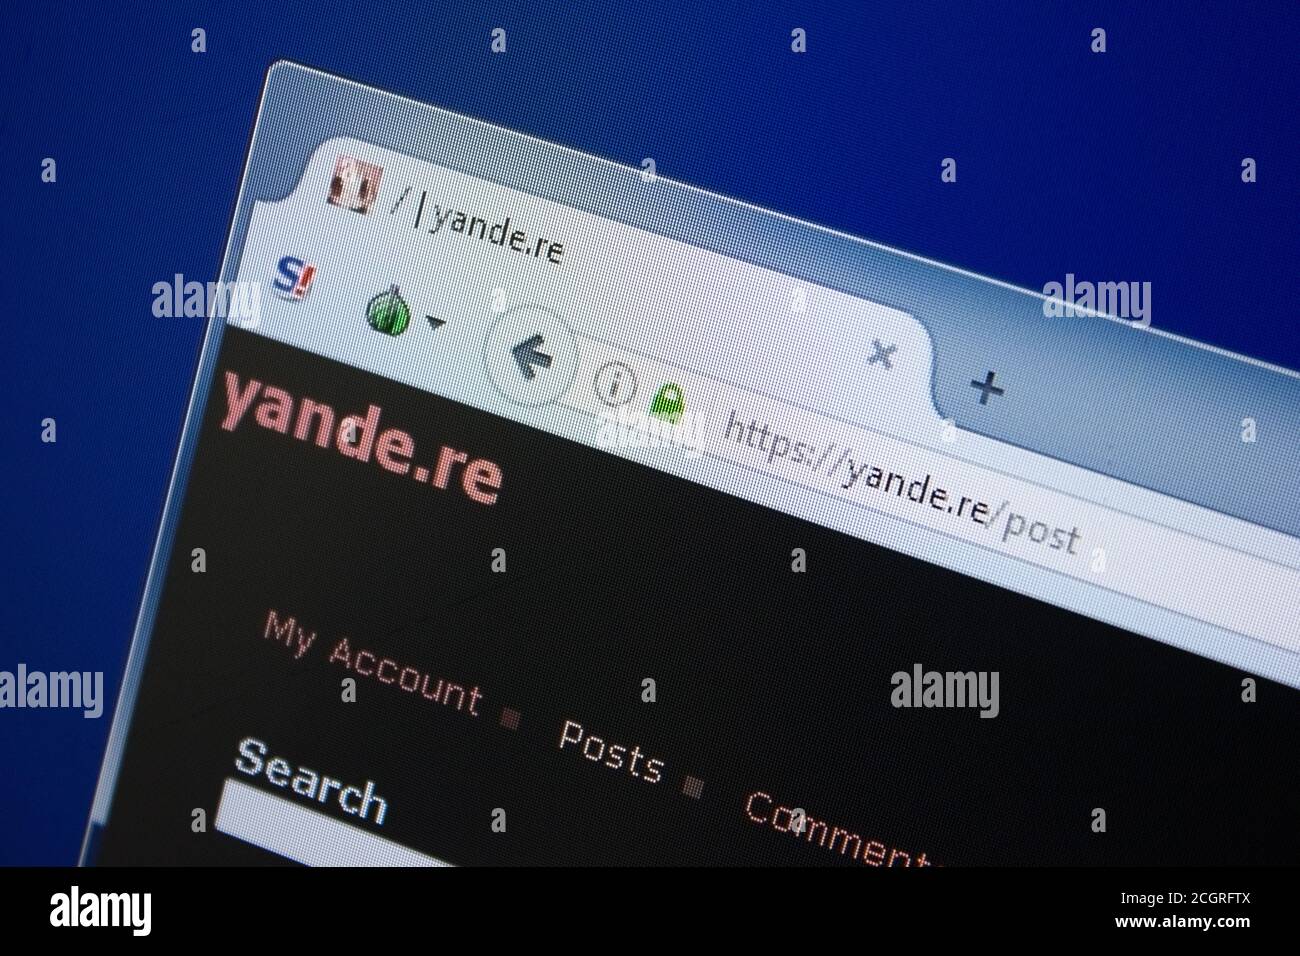 Ryazan, Russie - 09 septembre 2018: Page d'accueil du site de Yande sur l'affichage de PC, url - Yande.re. Banque D'Images